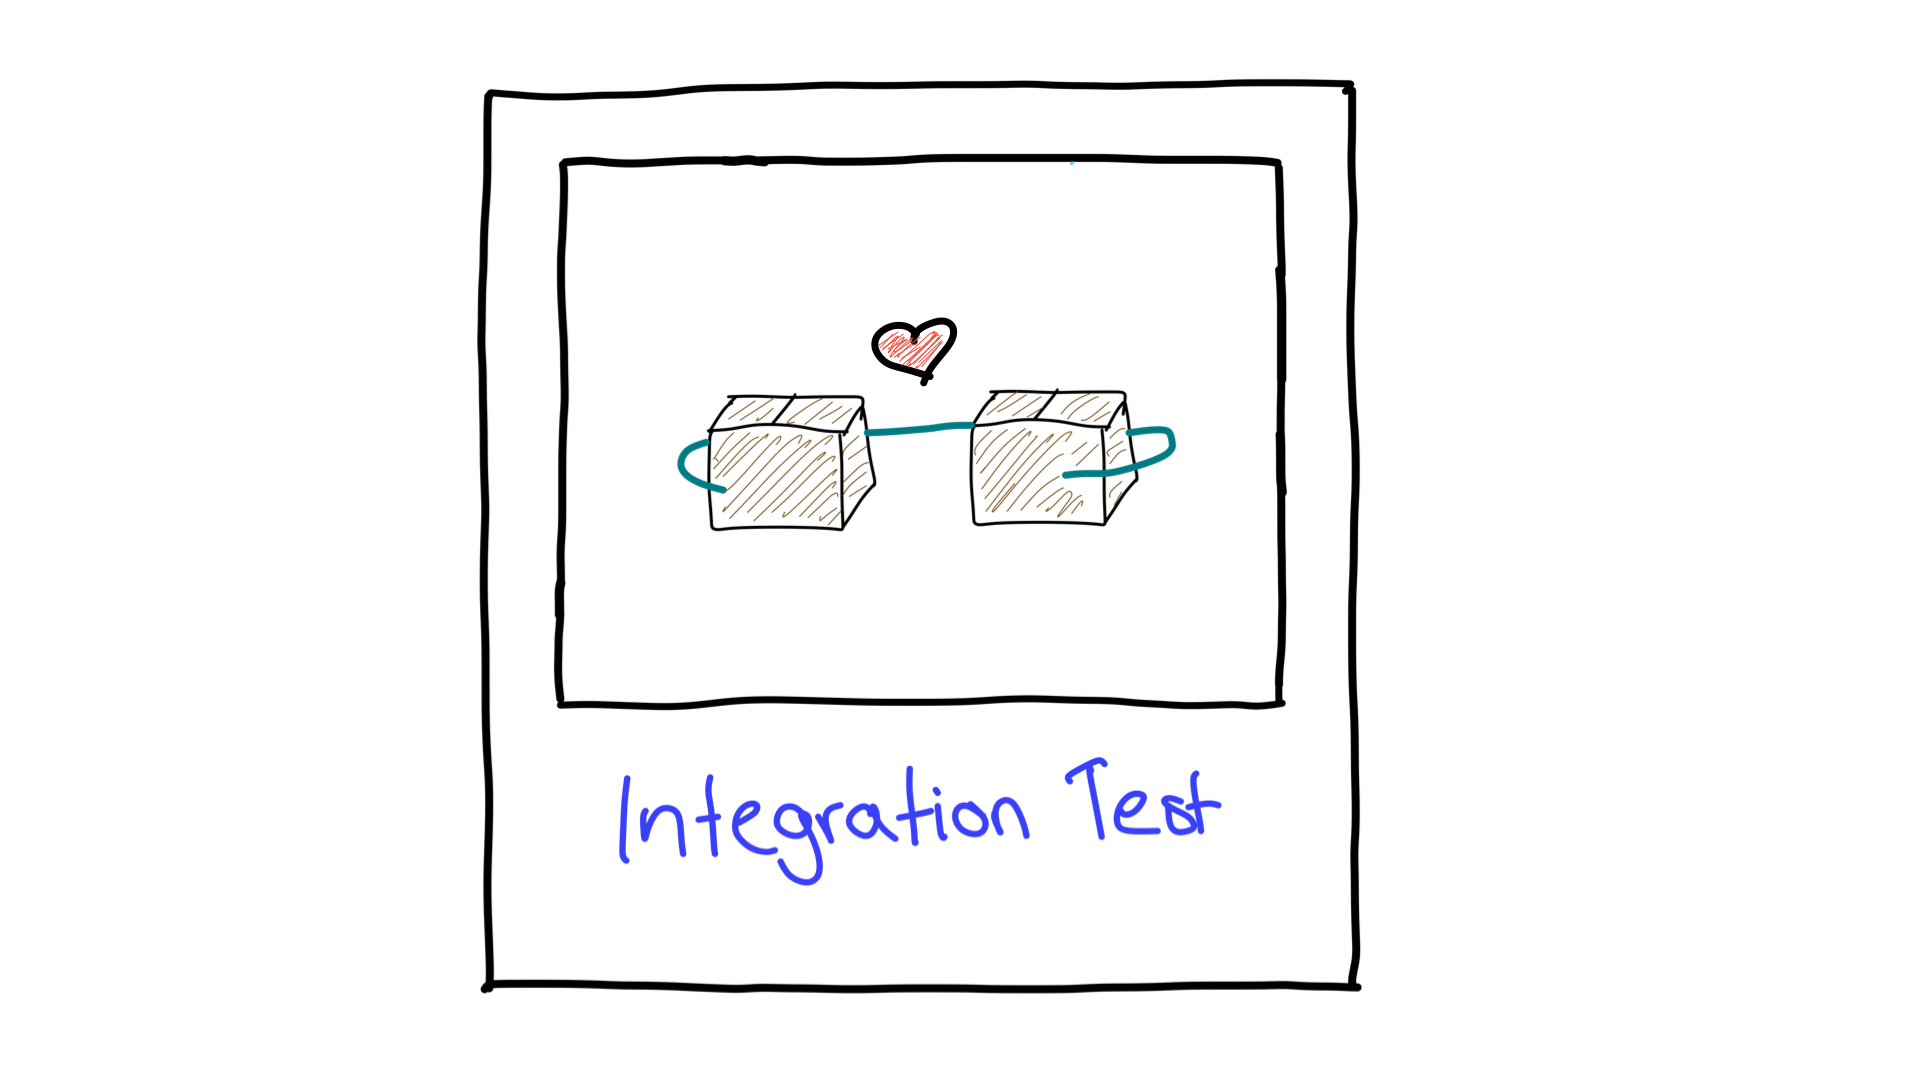 Упрощенное изображение интеграционного тестирования, показывающее, как два модуля работают вместе.